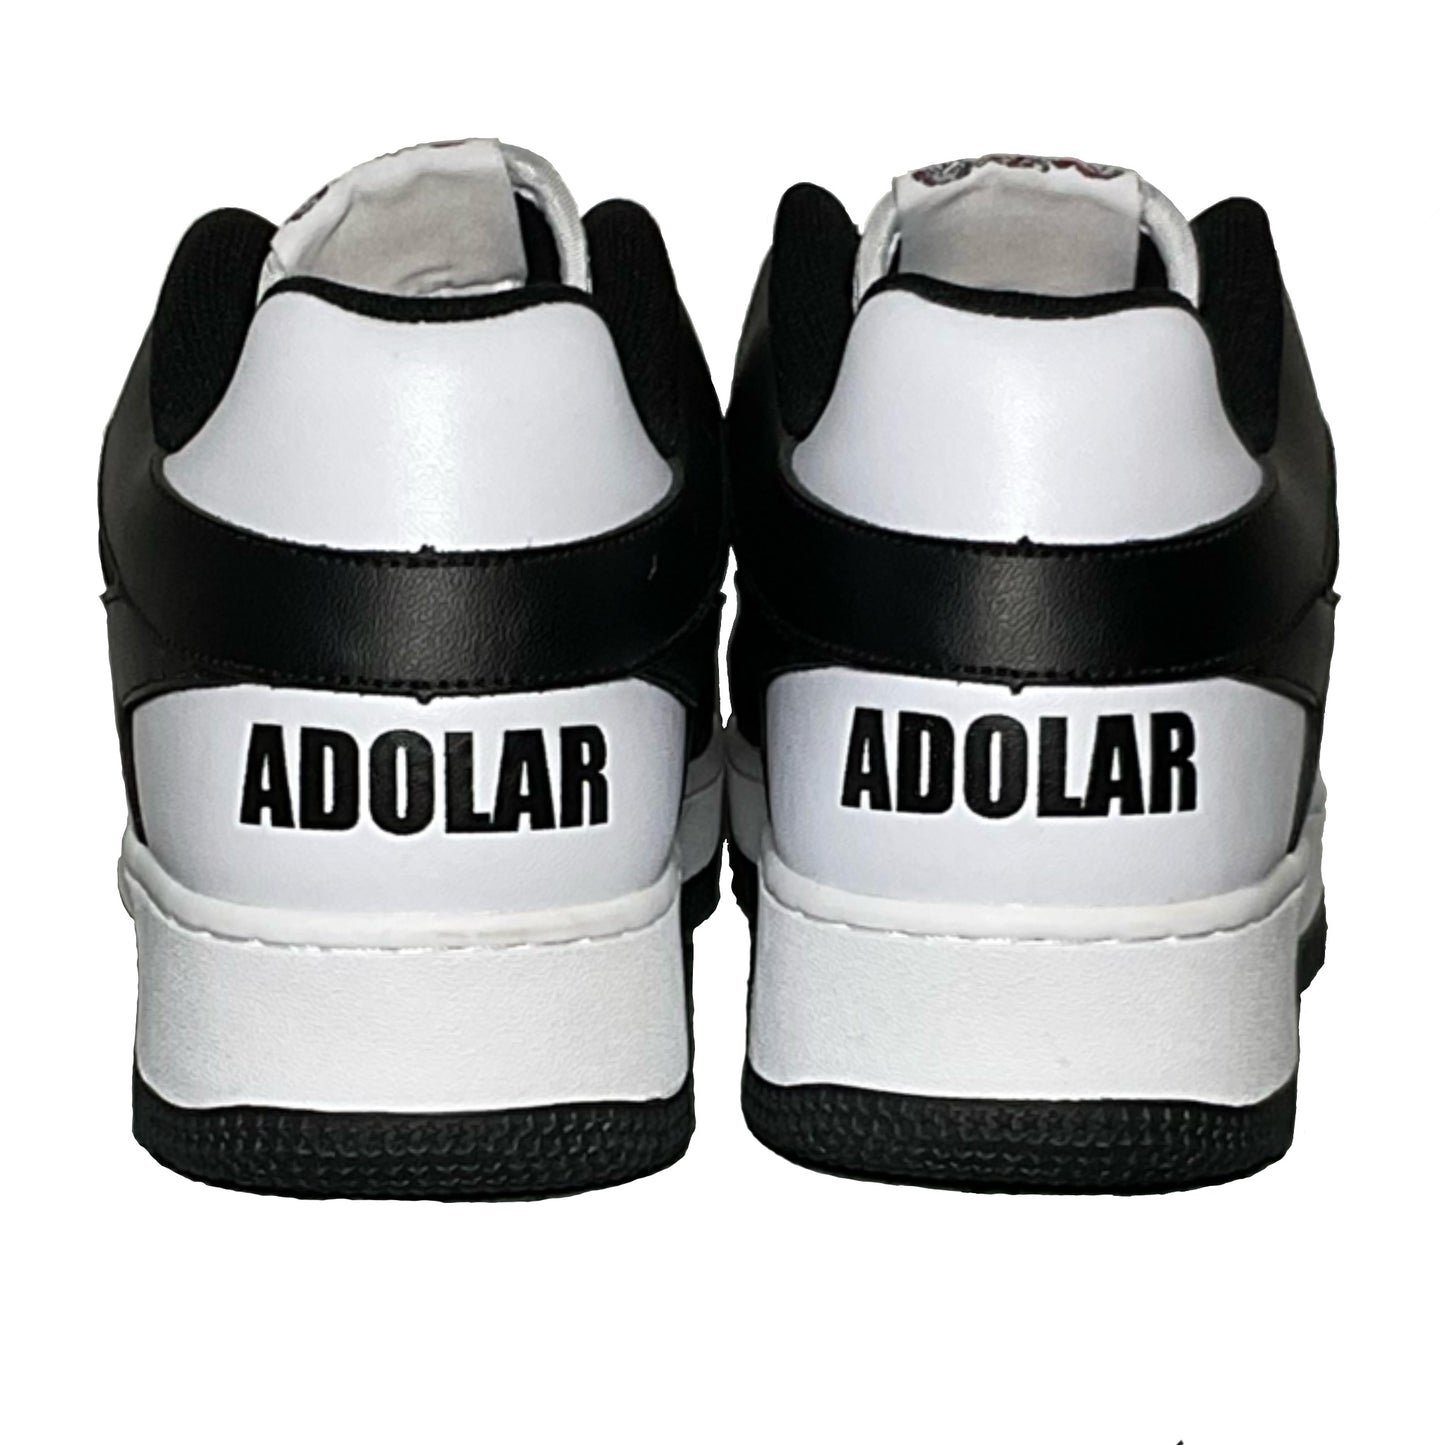 Adolar “Oreo” Sneakers